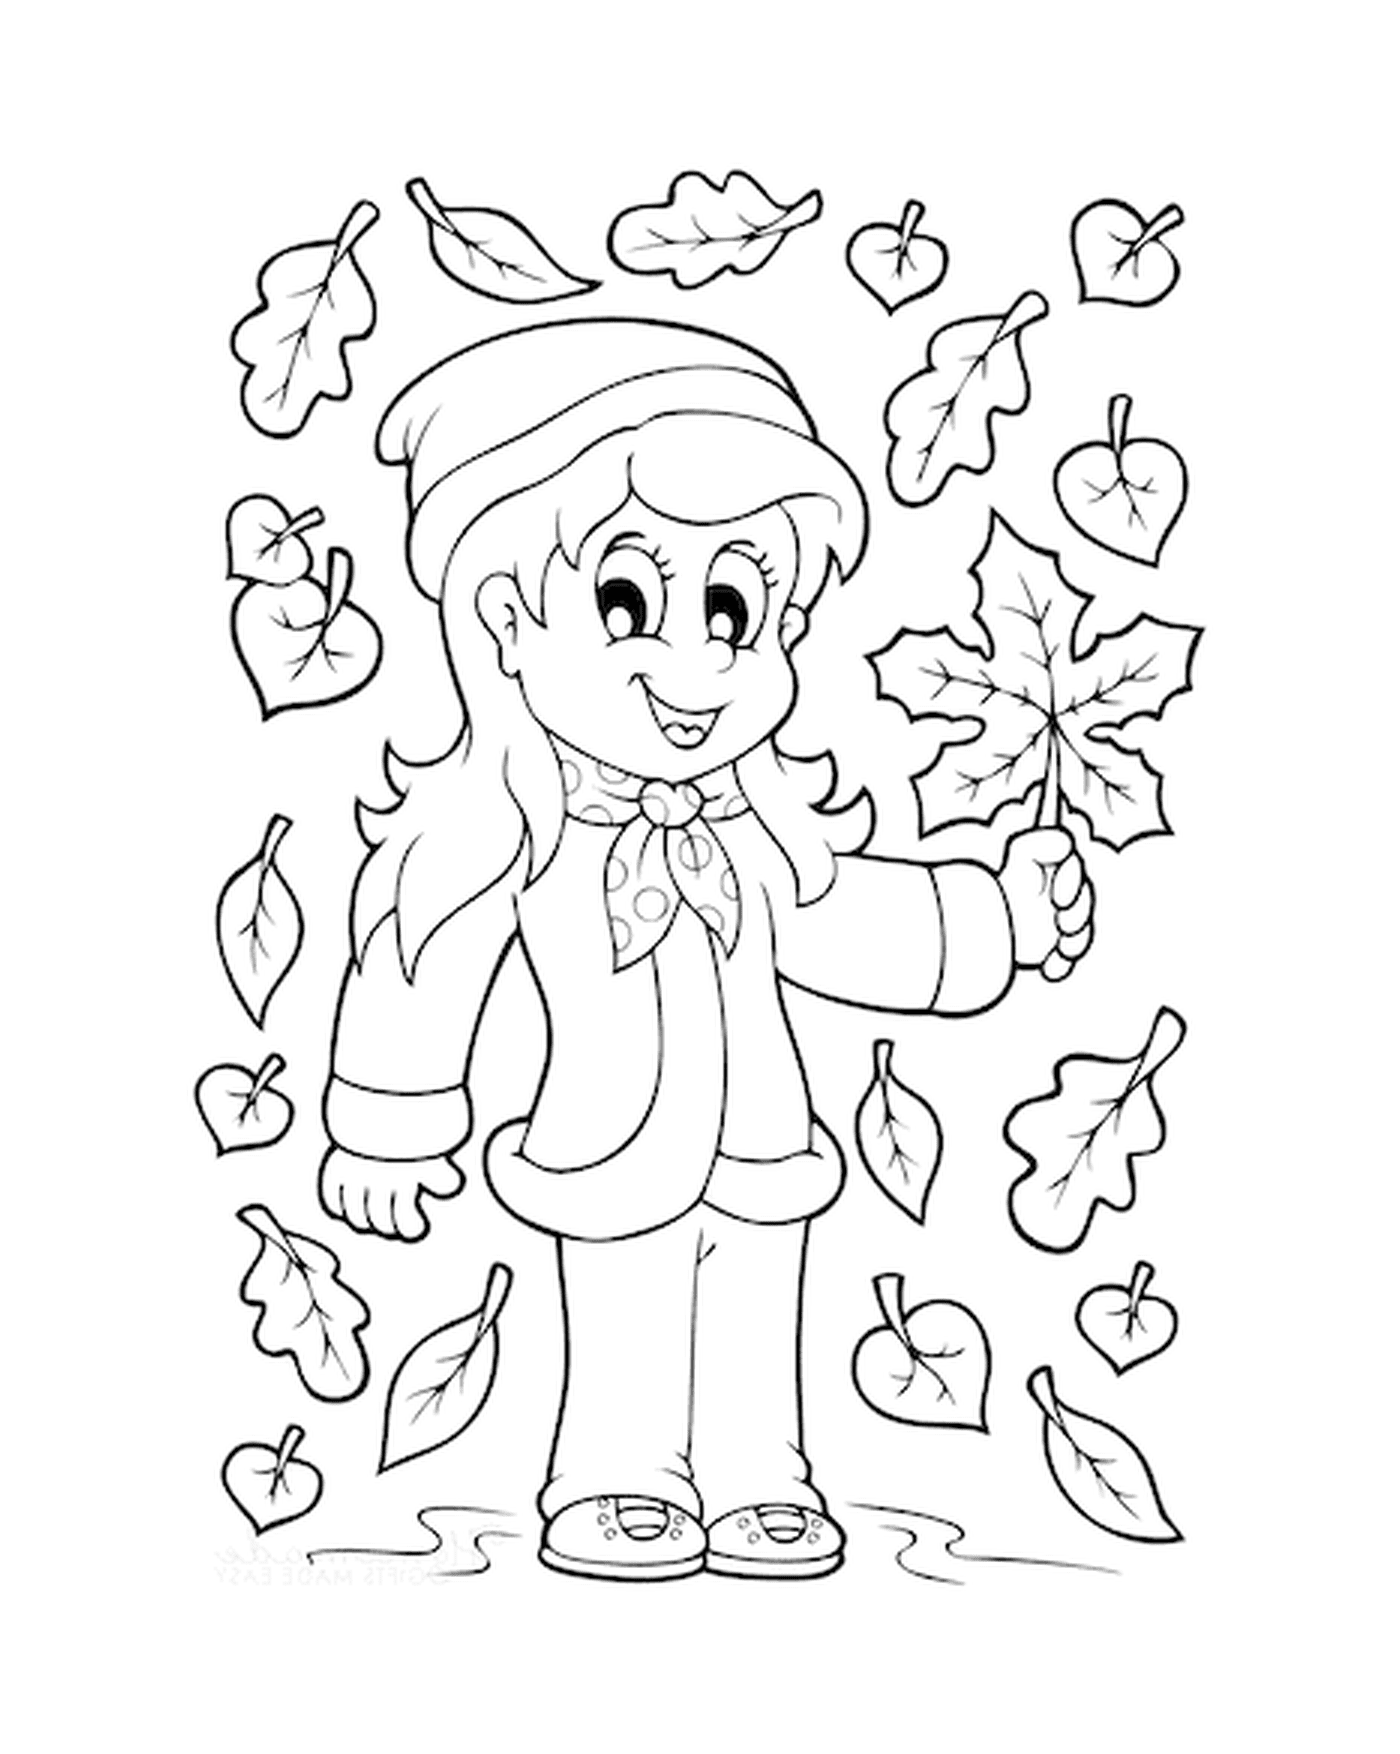  Uma menina segurando uma folha perto de uma árvore 